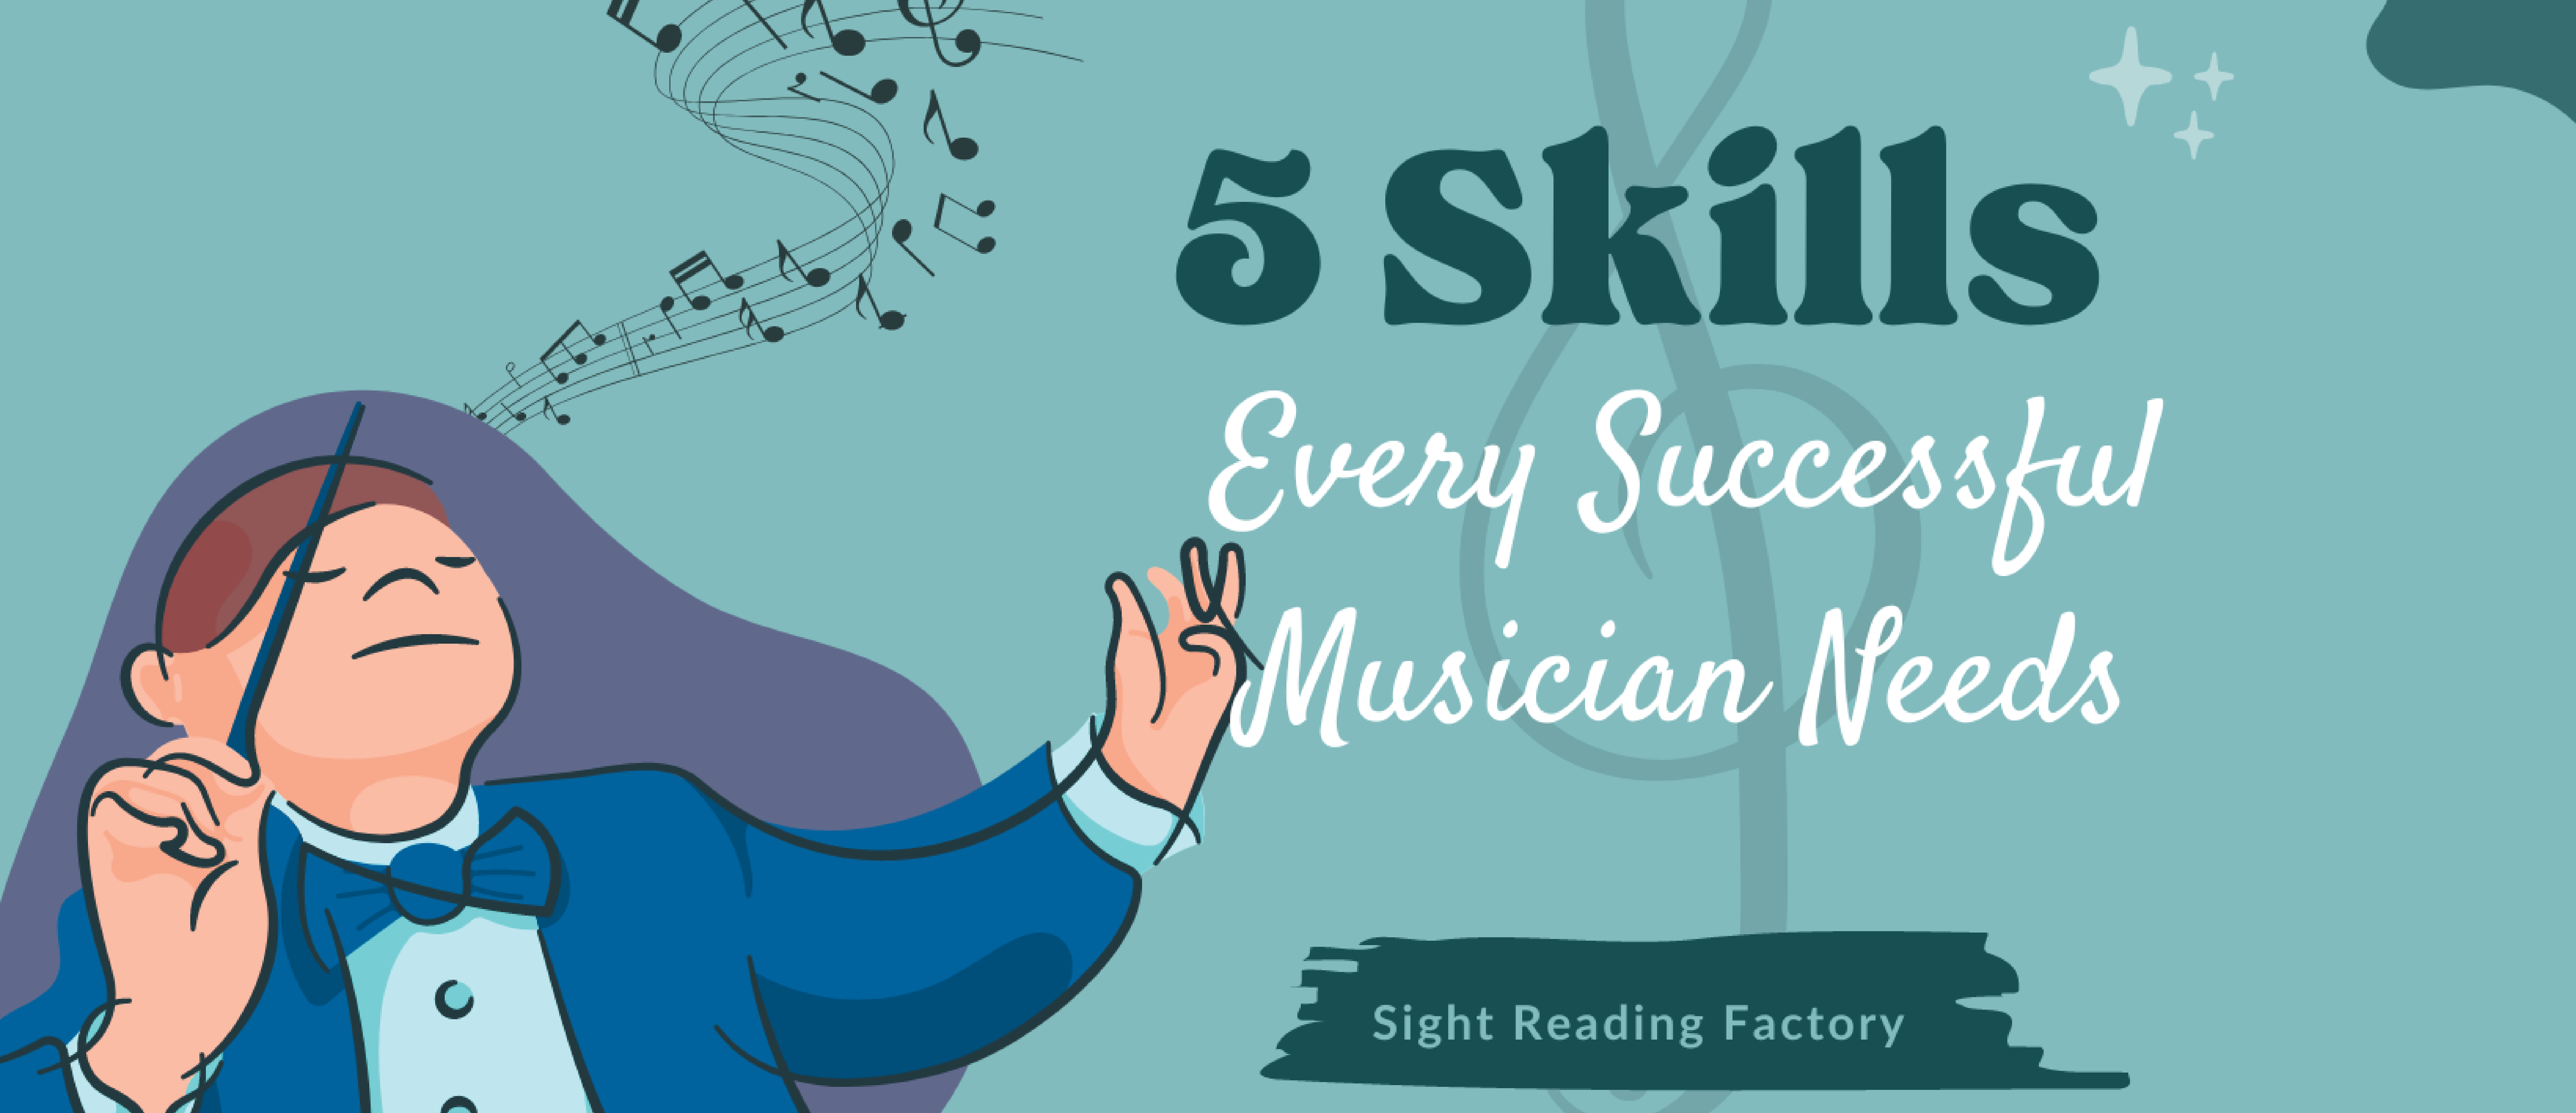 5 Skills Every Successful Musician Needs